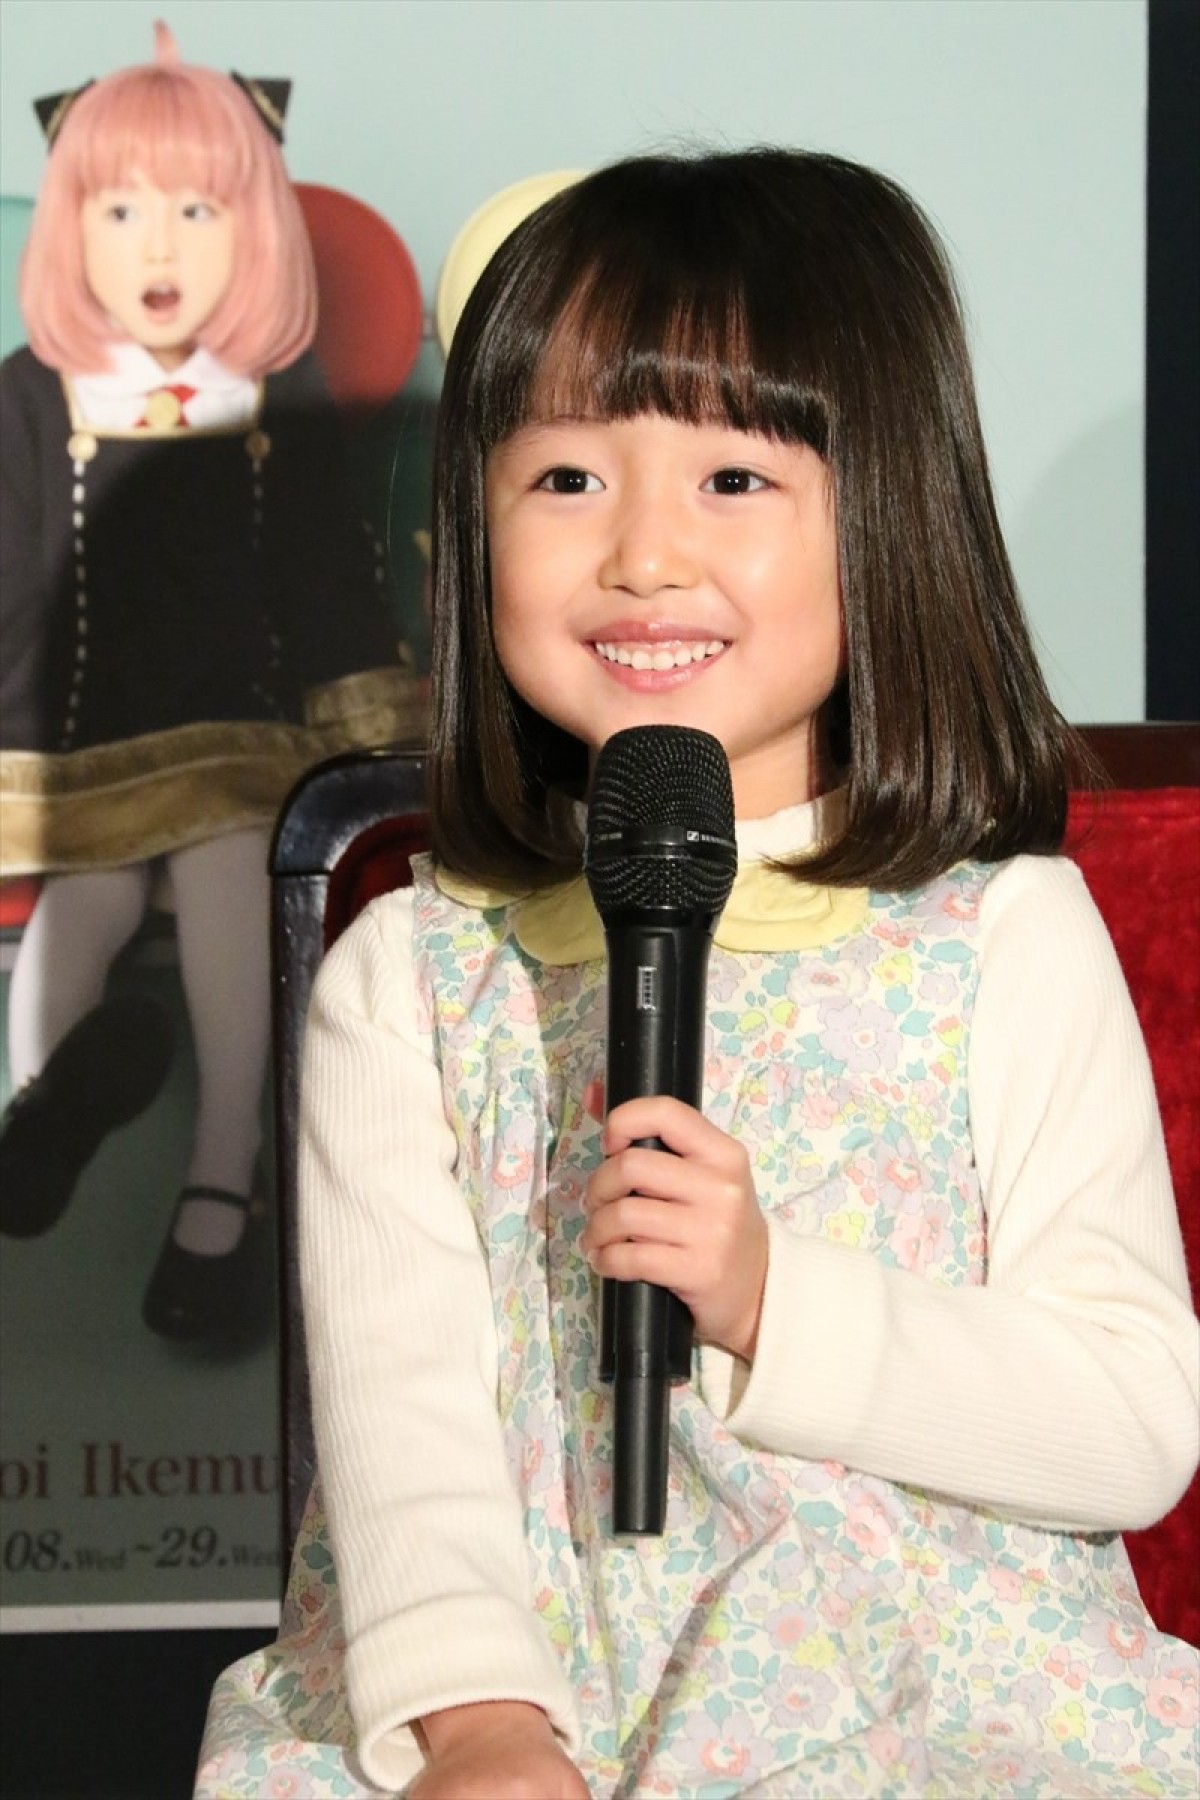 “スイちゃん”増田梨沙、『SPY×FAMILY』のアーニャ役決定に「家族が『ヒャー』って言っていて」